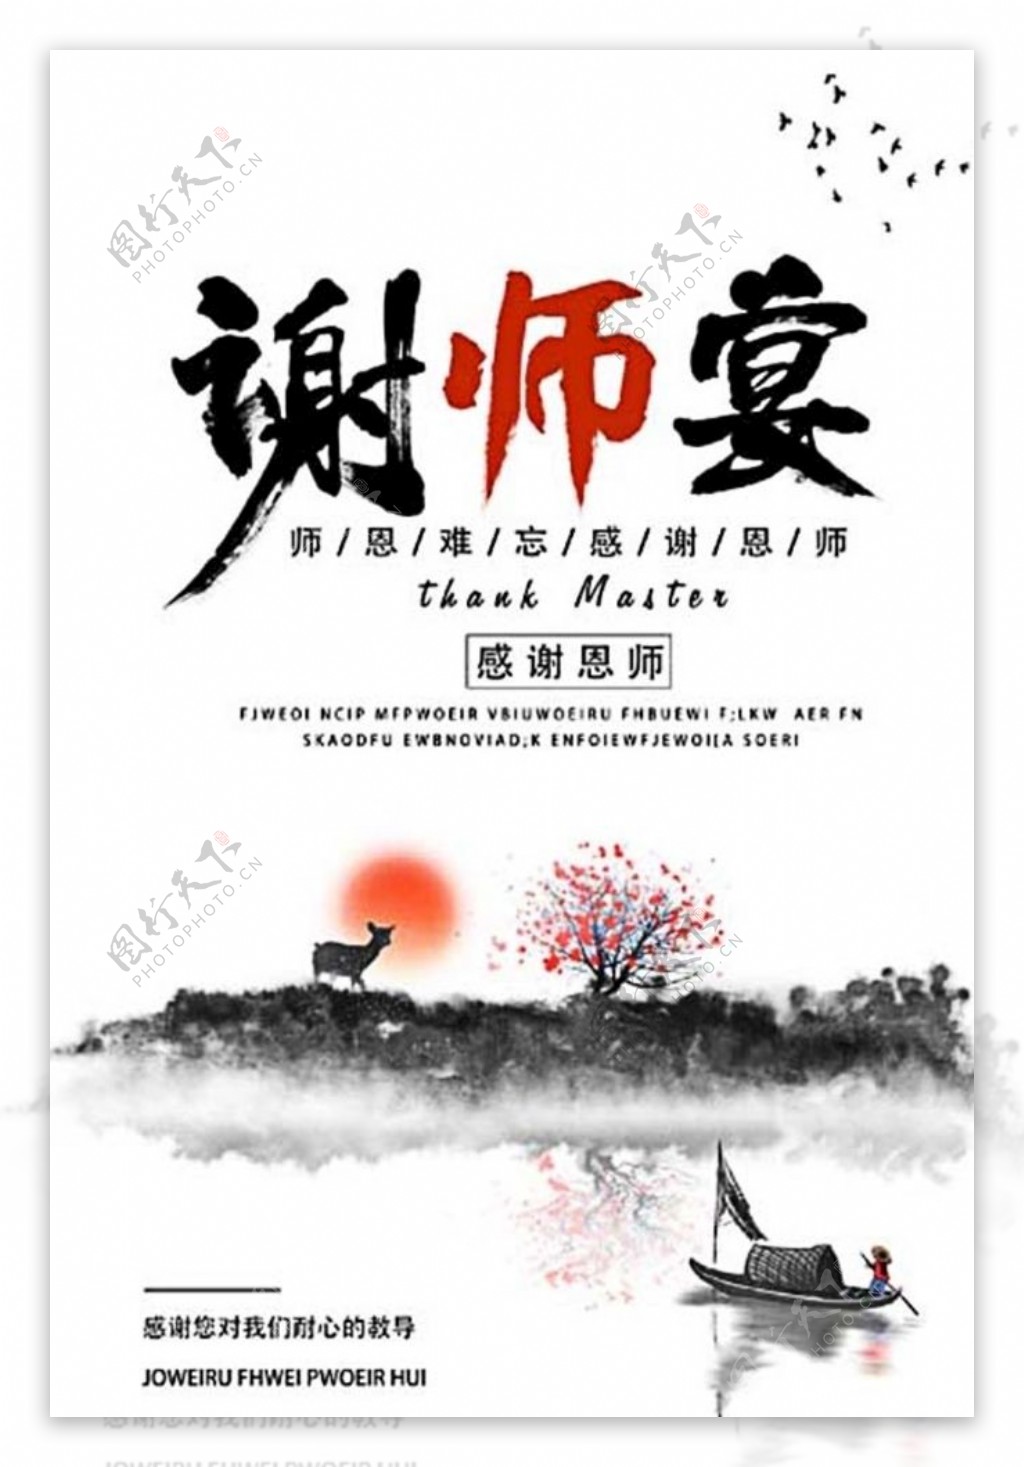 中国风谢师宴海报